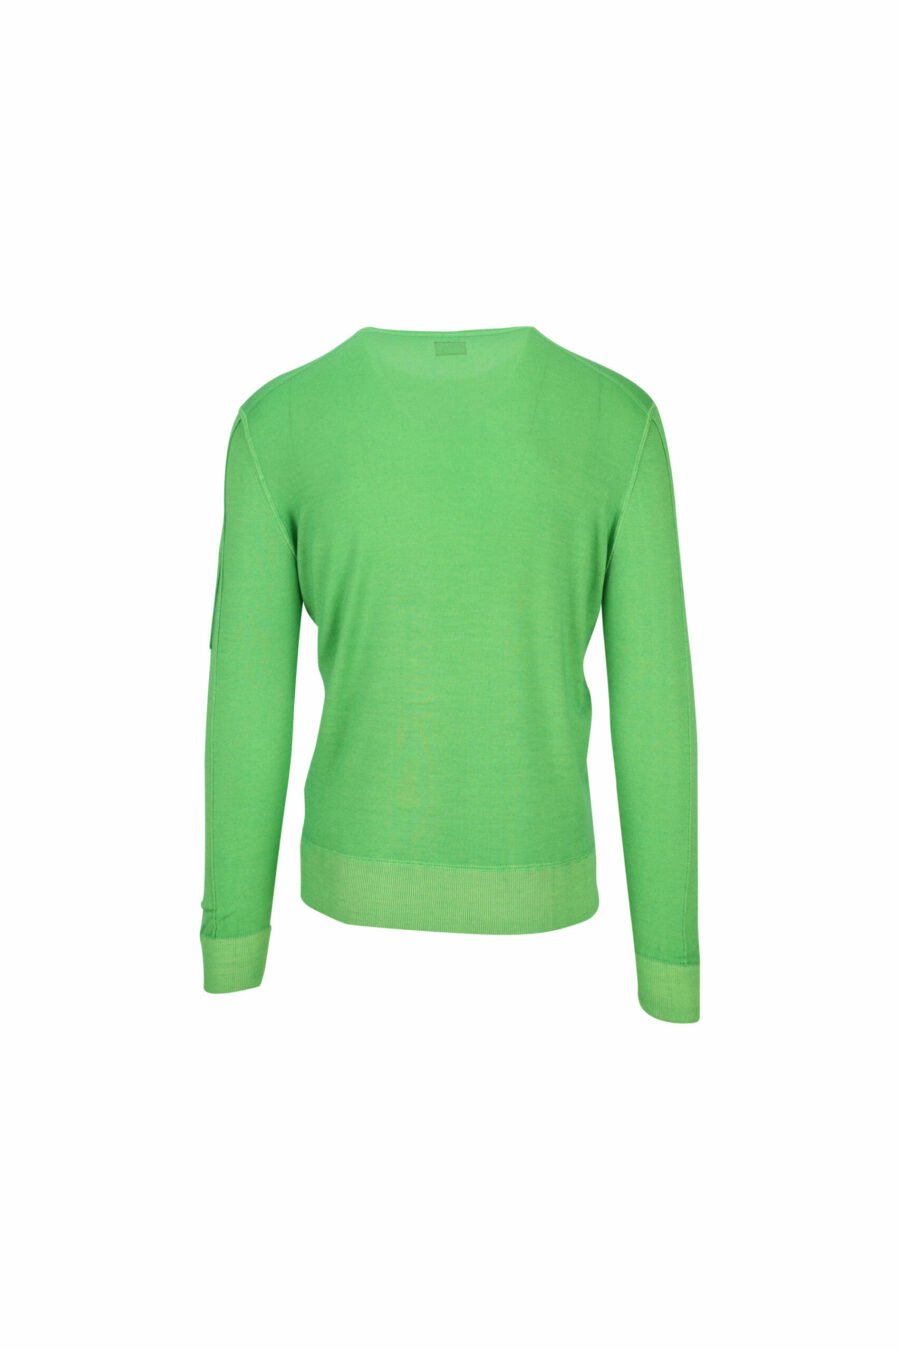 Sweatshirt vert avec logo de la lentille latérale - 7620943580846 1 à l'échelle